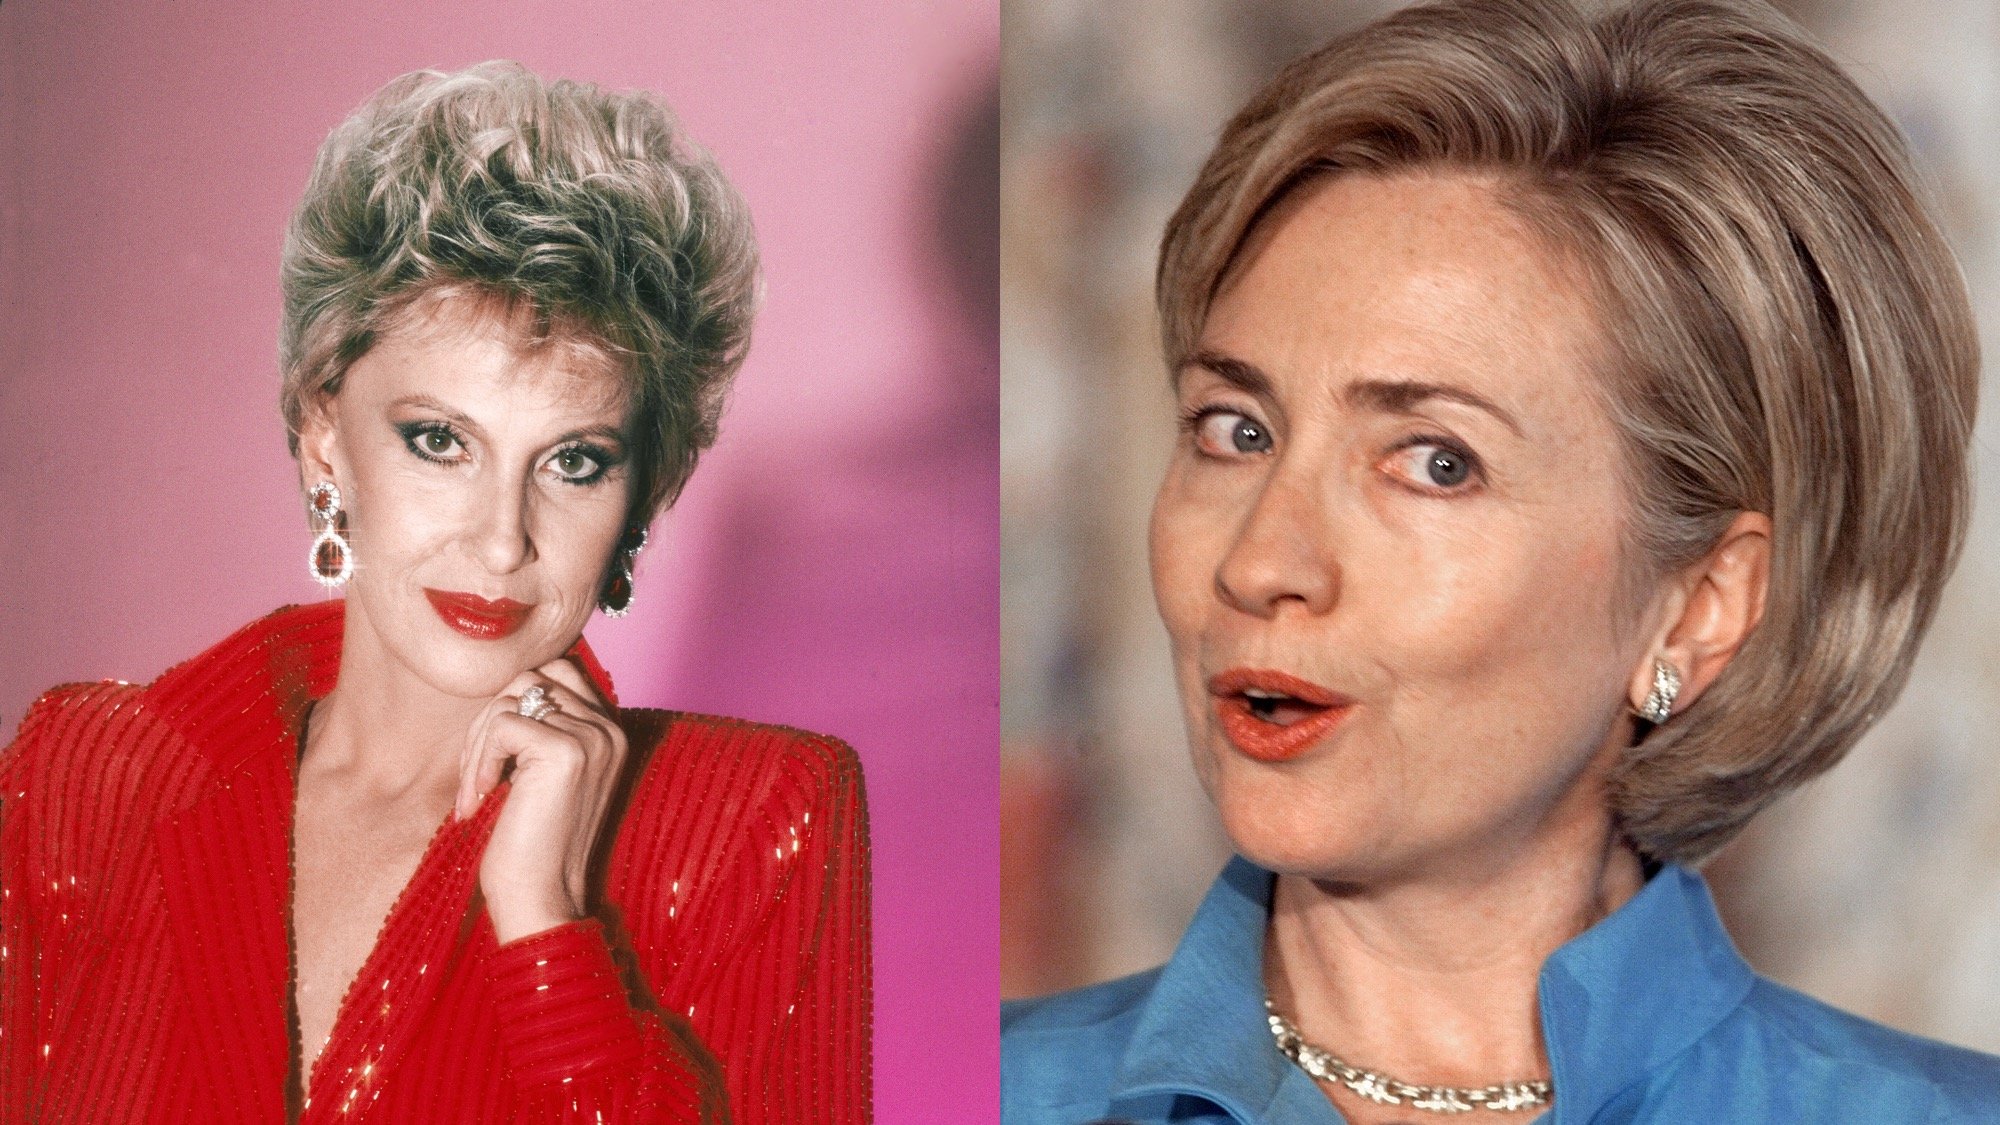 (L) Tammy Wynette in 1984 (R) Hillary Clinton in 1998